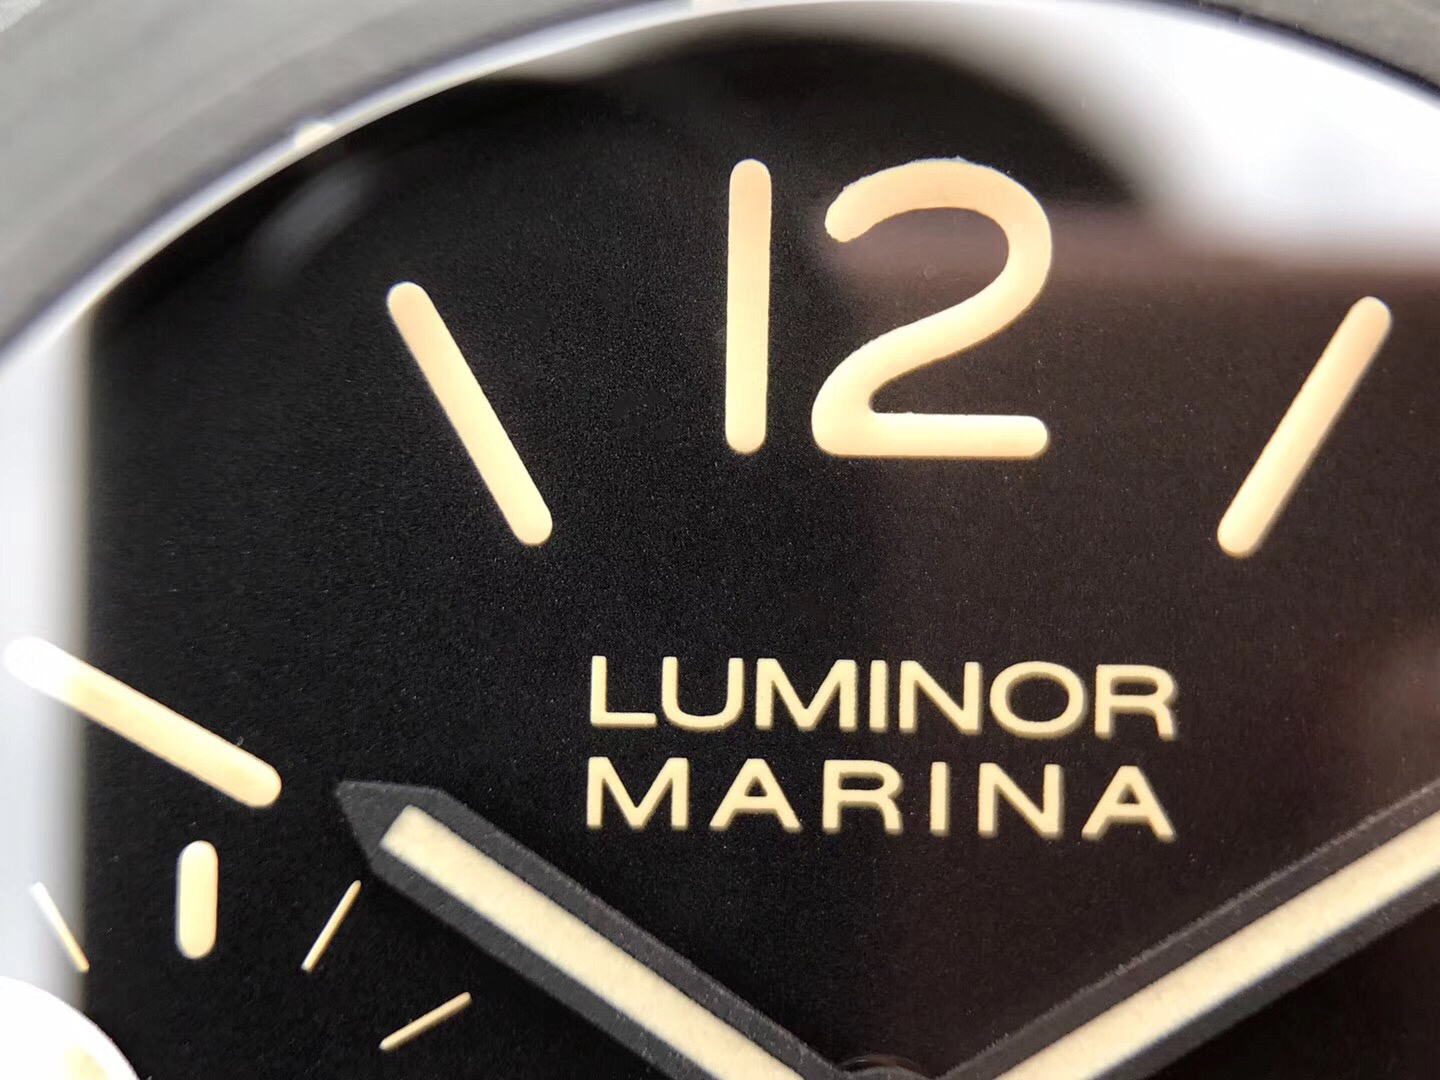 202304160220531 - 復刻手錶沛納海到哪裏買 XF沛納海PAM417碳纖限量版￥2980